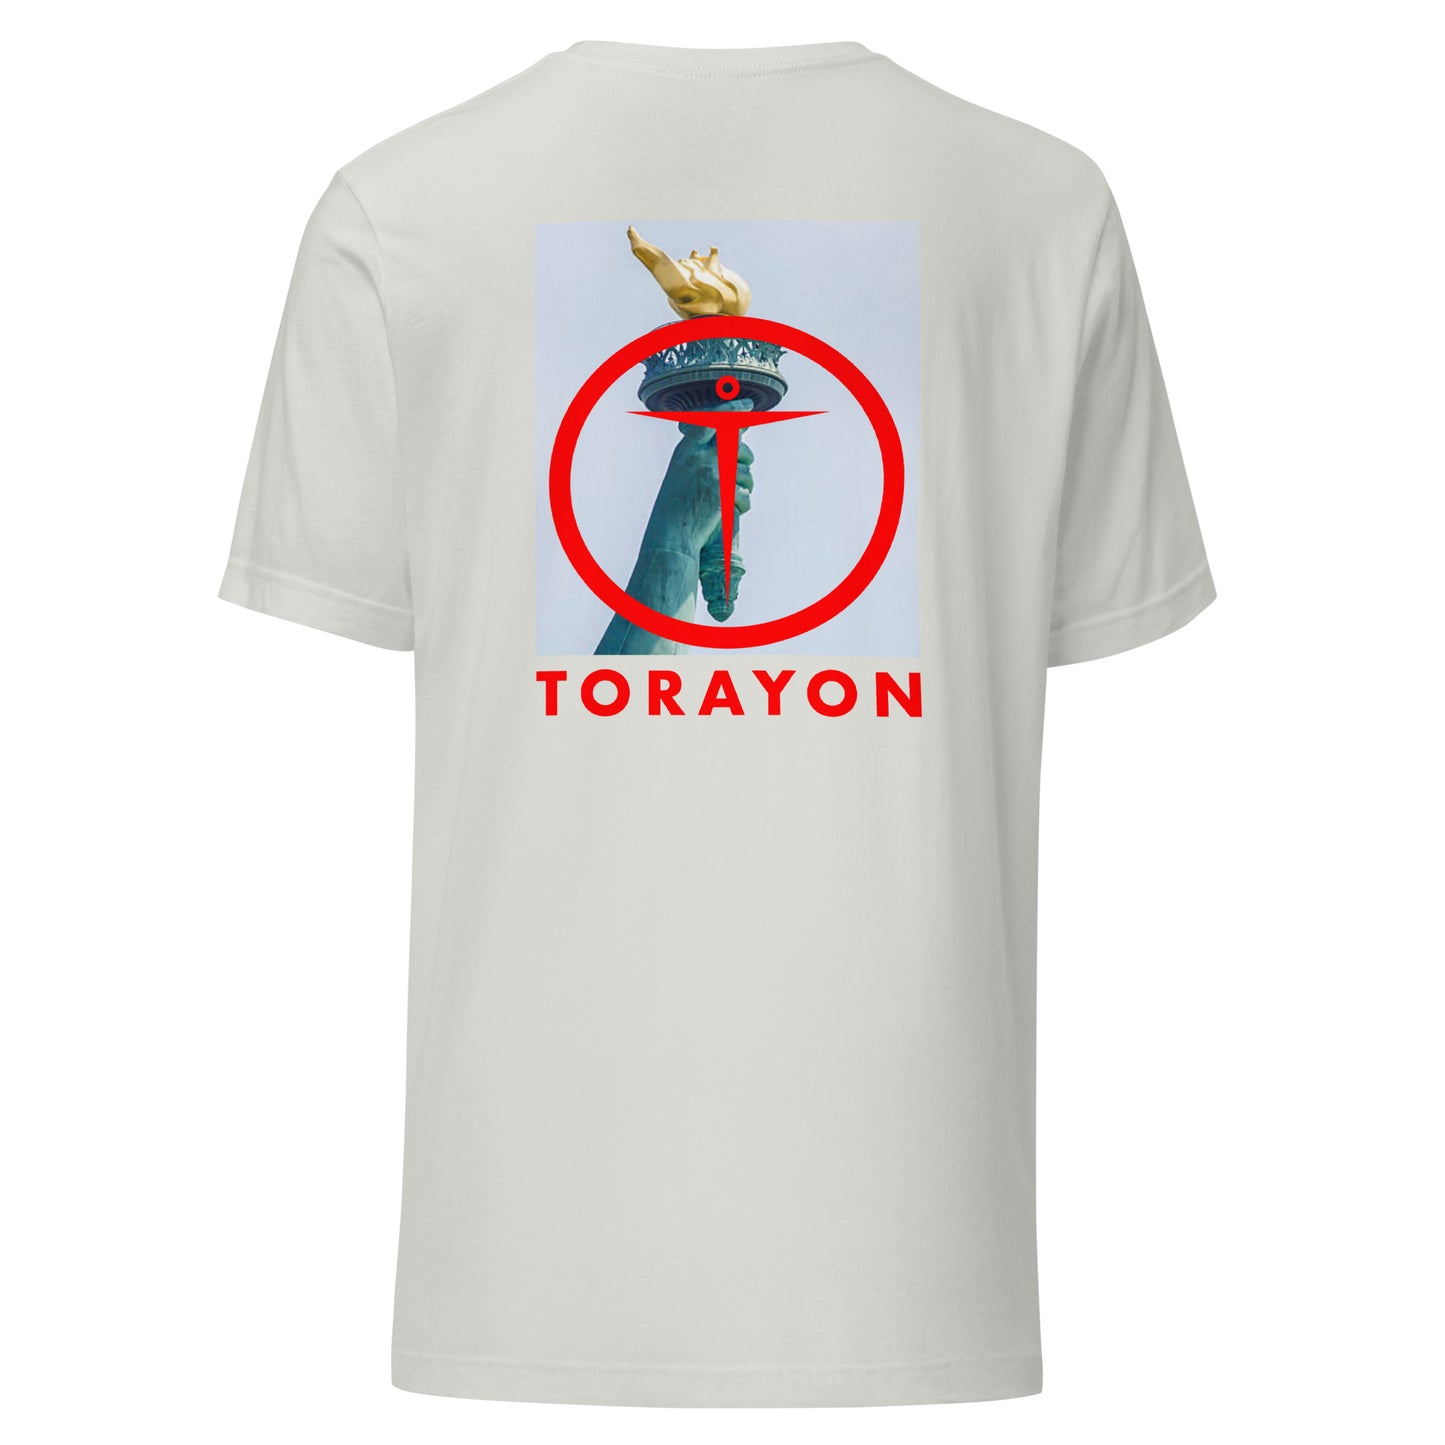 TORAYON [TORCHLIBERTY] Unisex t-shirt